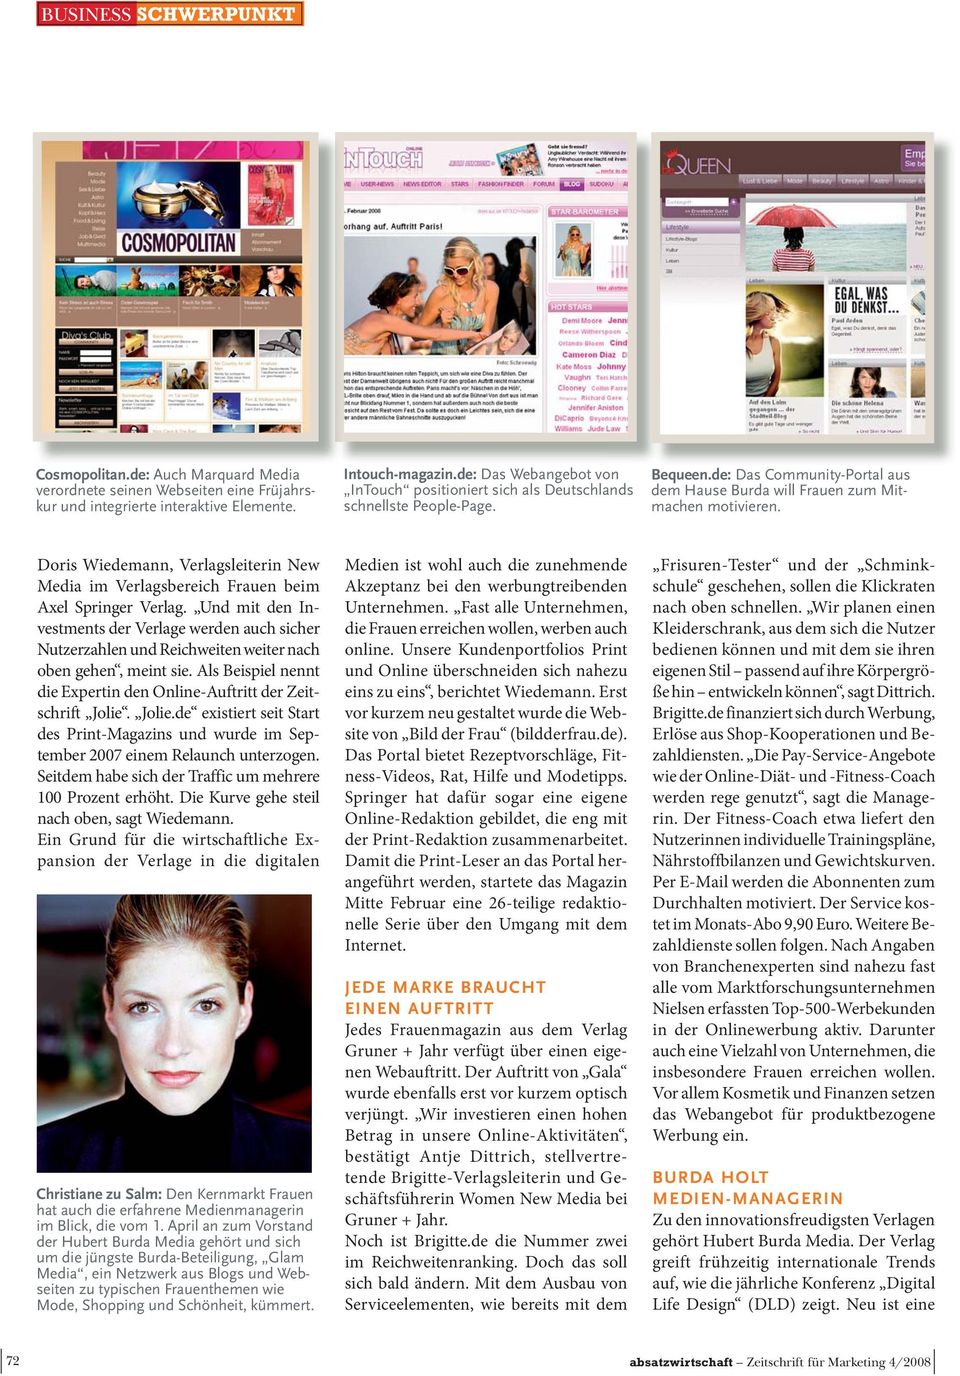 Doris Wiedemann, Verlagsleiterin New Media im Verlagsbereich Frauen beim Axel Springer Verlag.